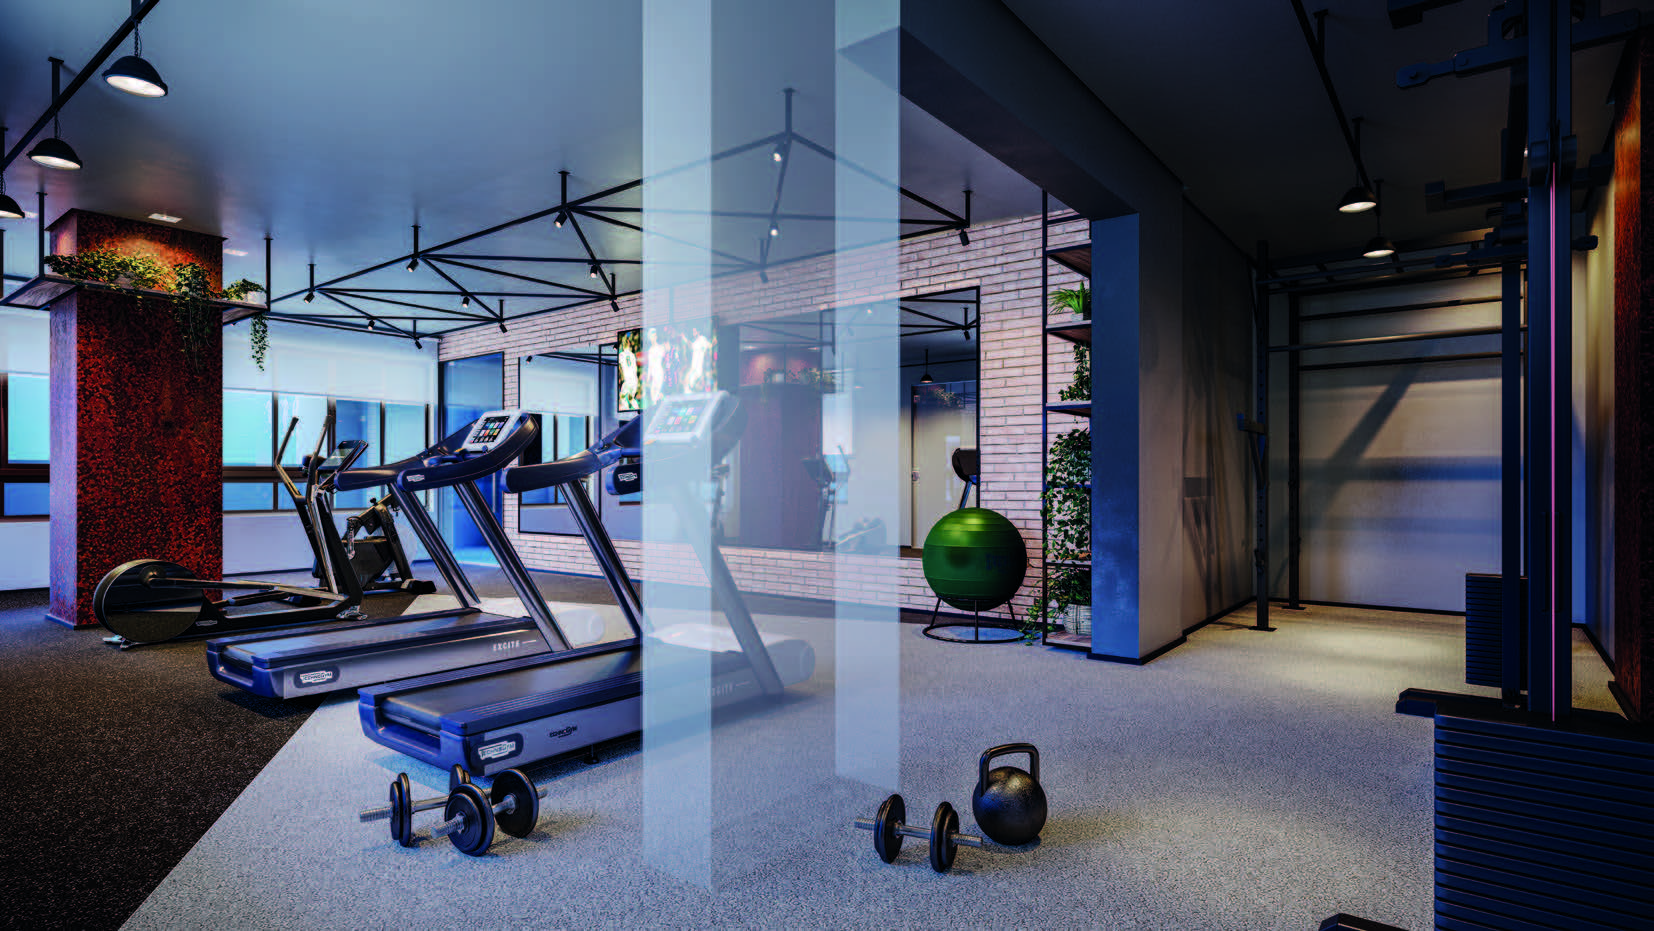 imagem ilustra um espaço para atividades físicas, com esteiras, pesos e uma bola verde de pilates